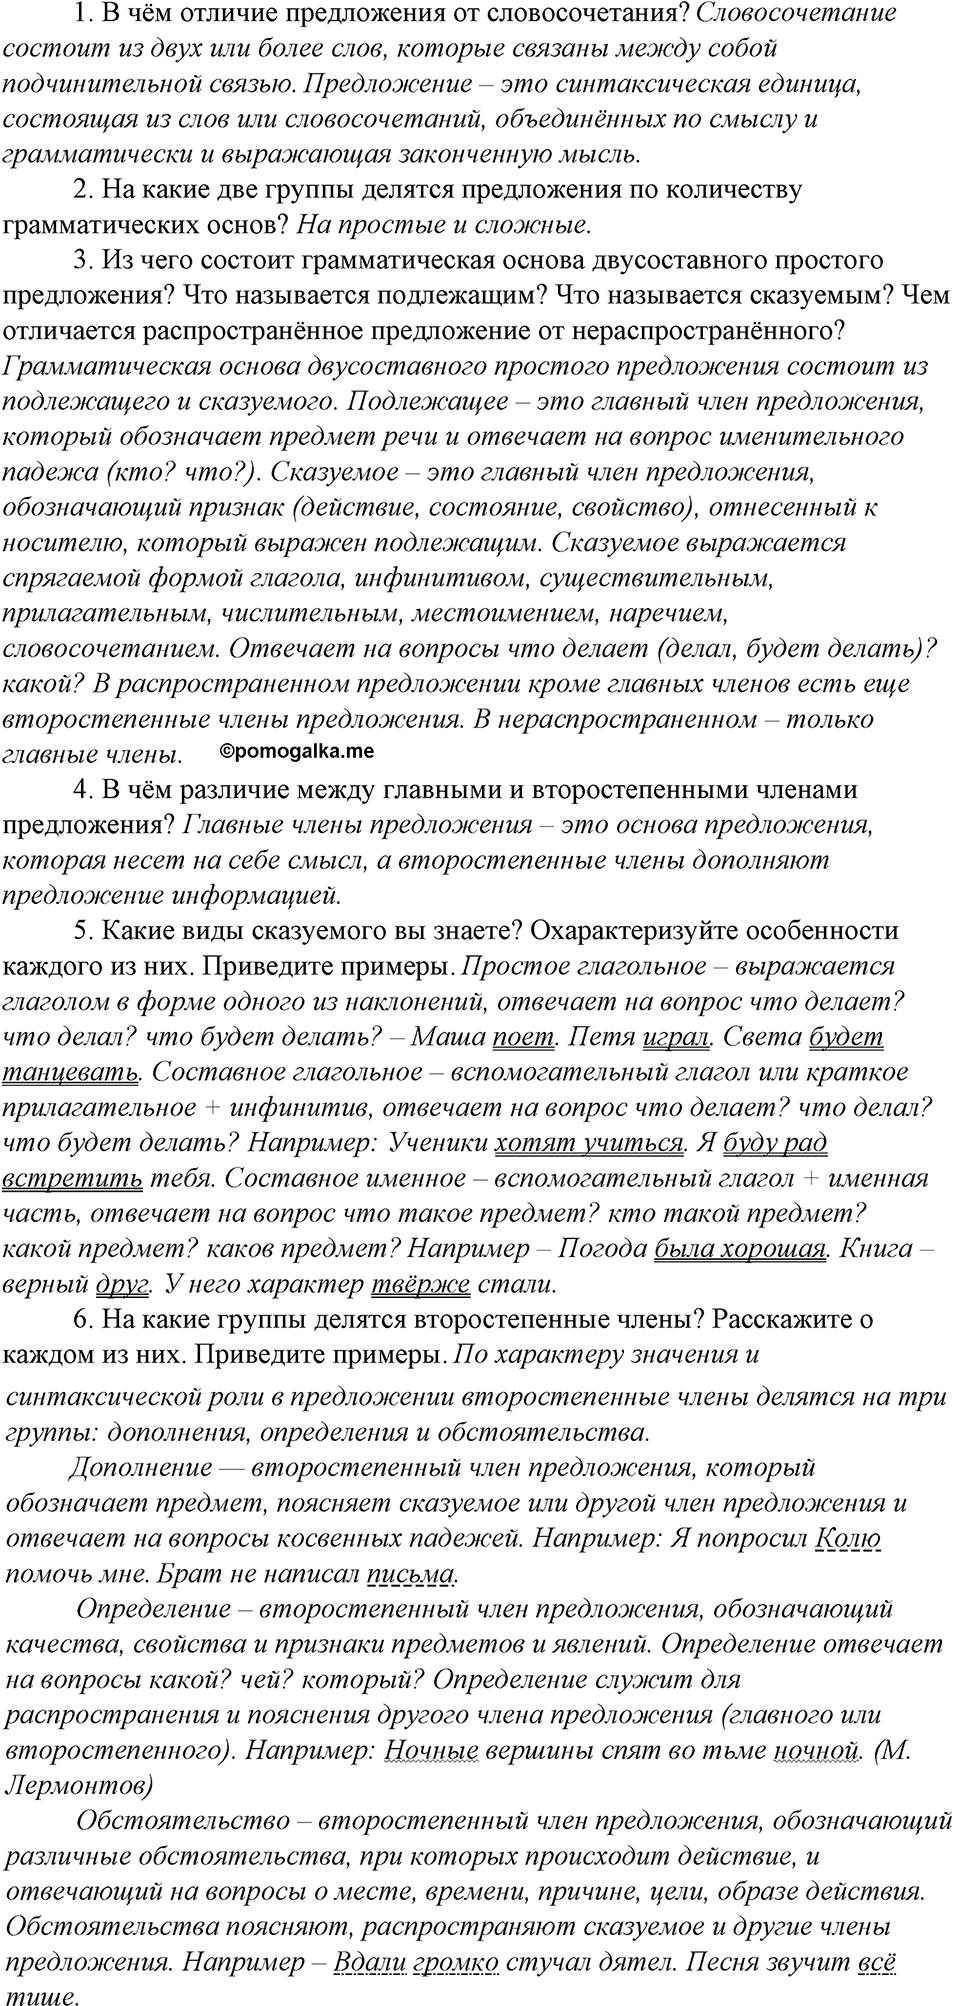 страница 97 контрольные вопросы и задания русский язык 8 класс Тростенцова, Ладыженская 2014 год